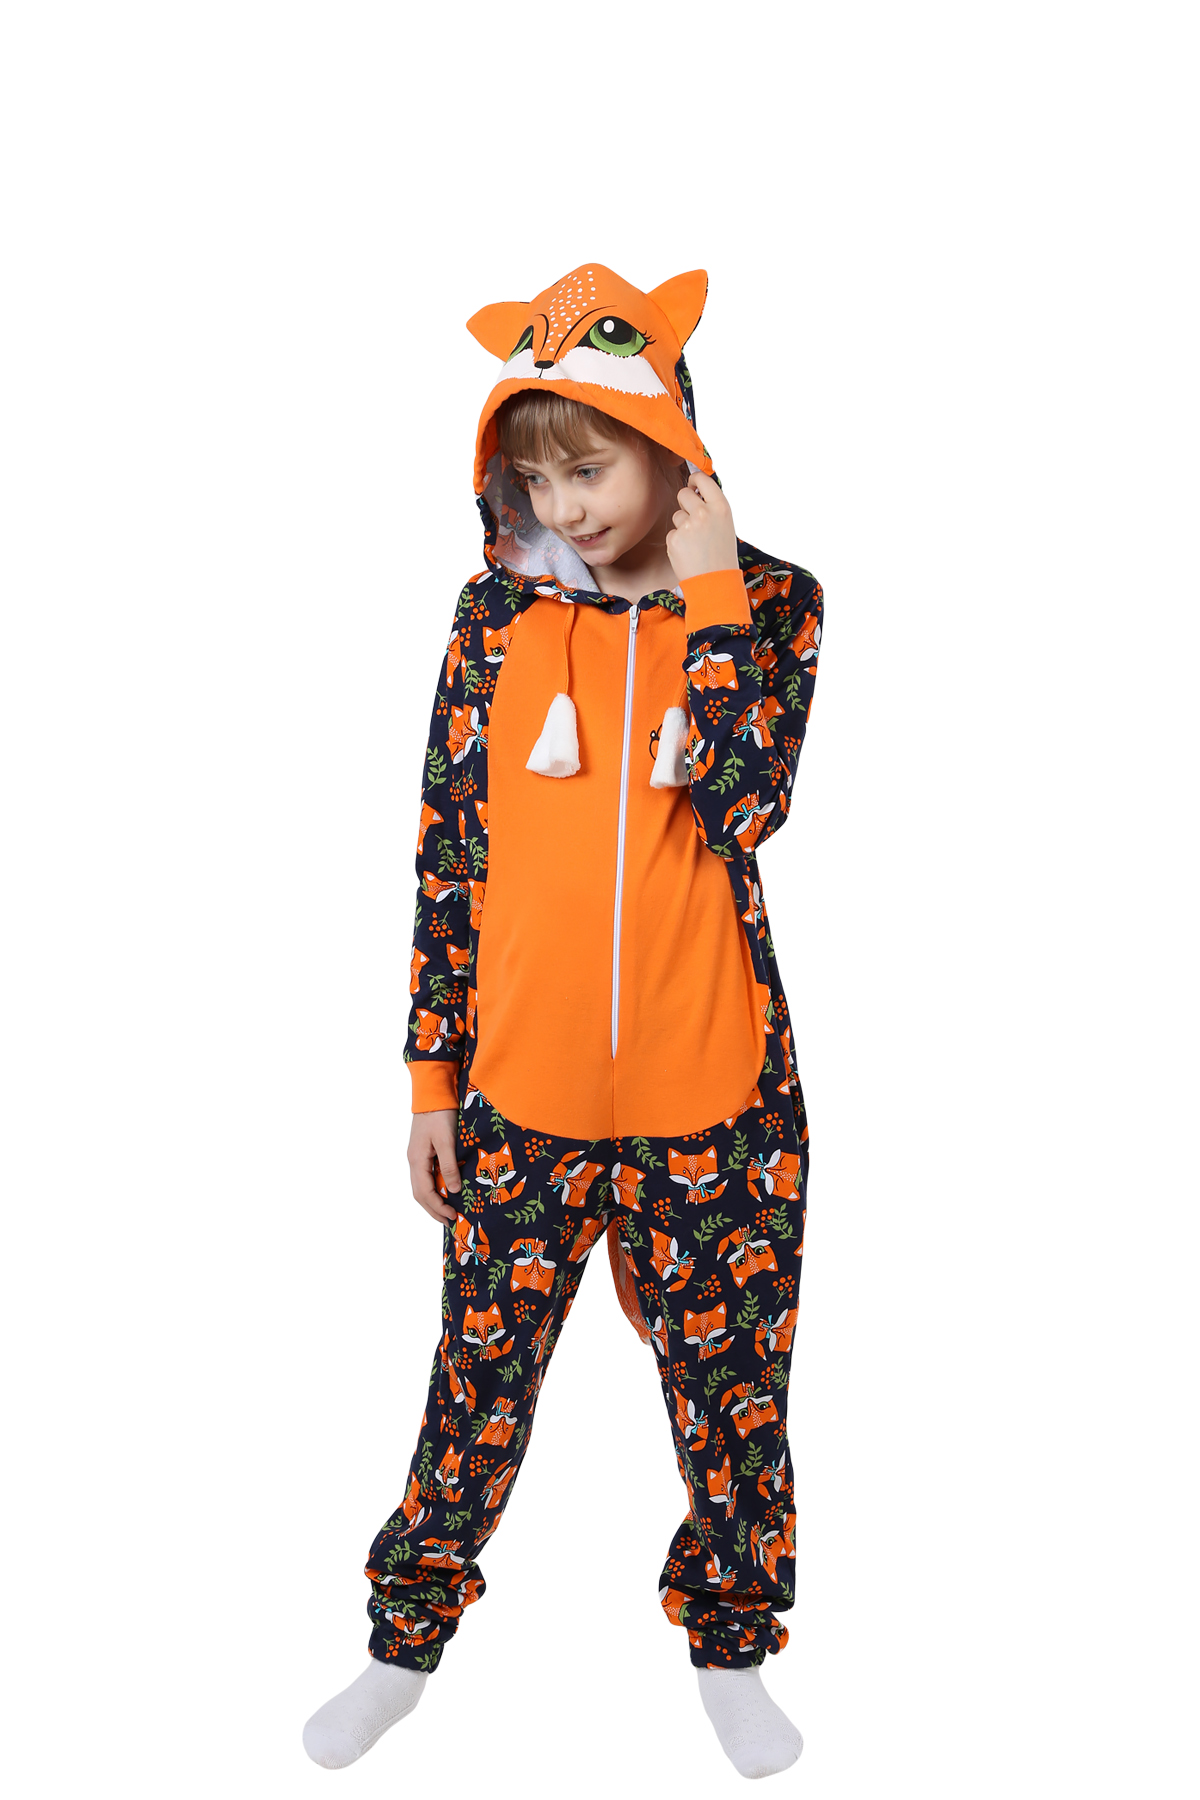 Детская пижама-кигуруми Лиса Цвет: Оранжевый (11 лет), размер 11 лет otj636470 Детская пижама-кигуруми Лиса Цвет: Оранжевый (11 лет) - фото 1